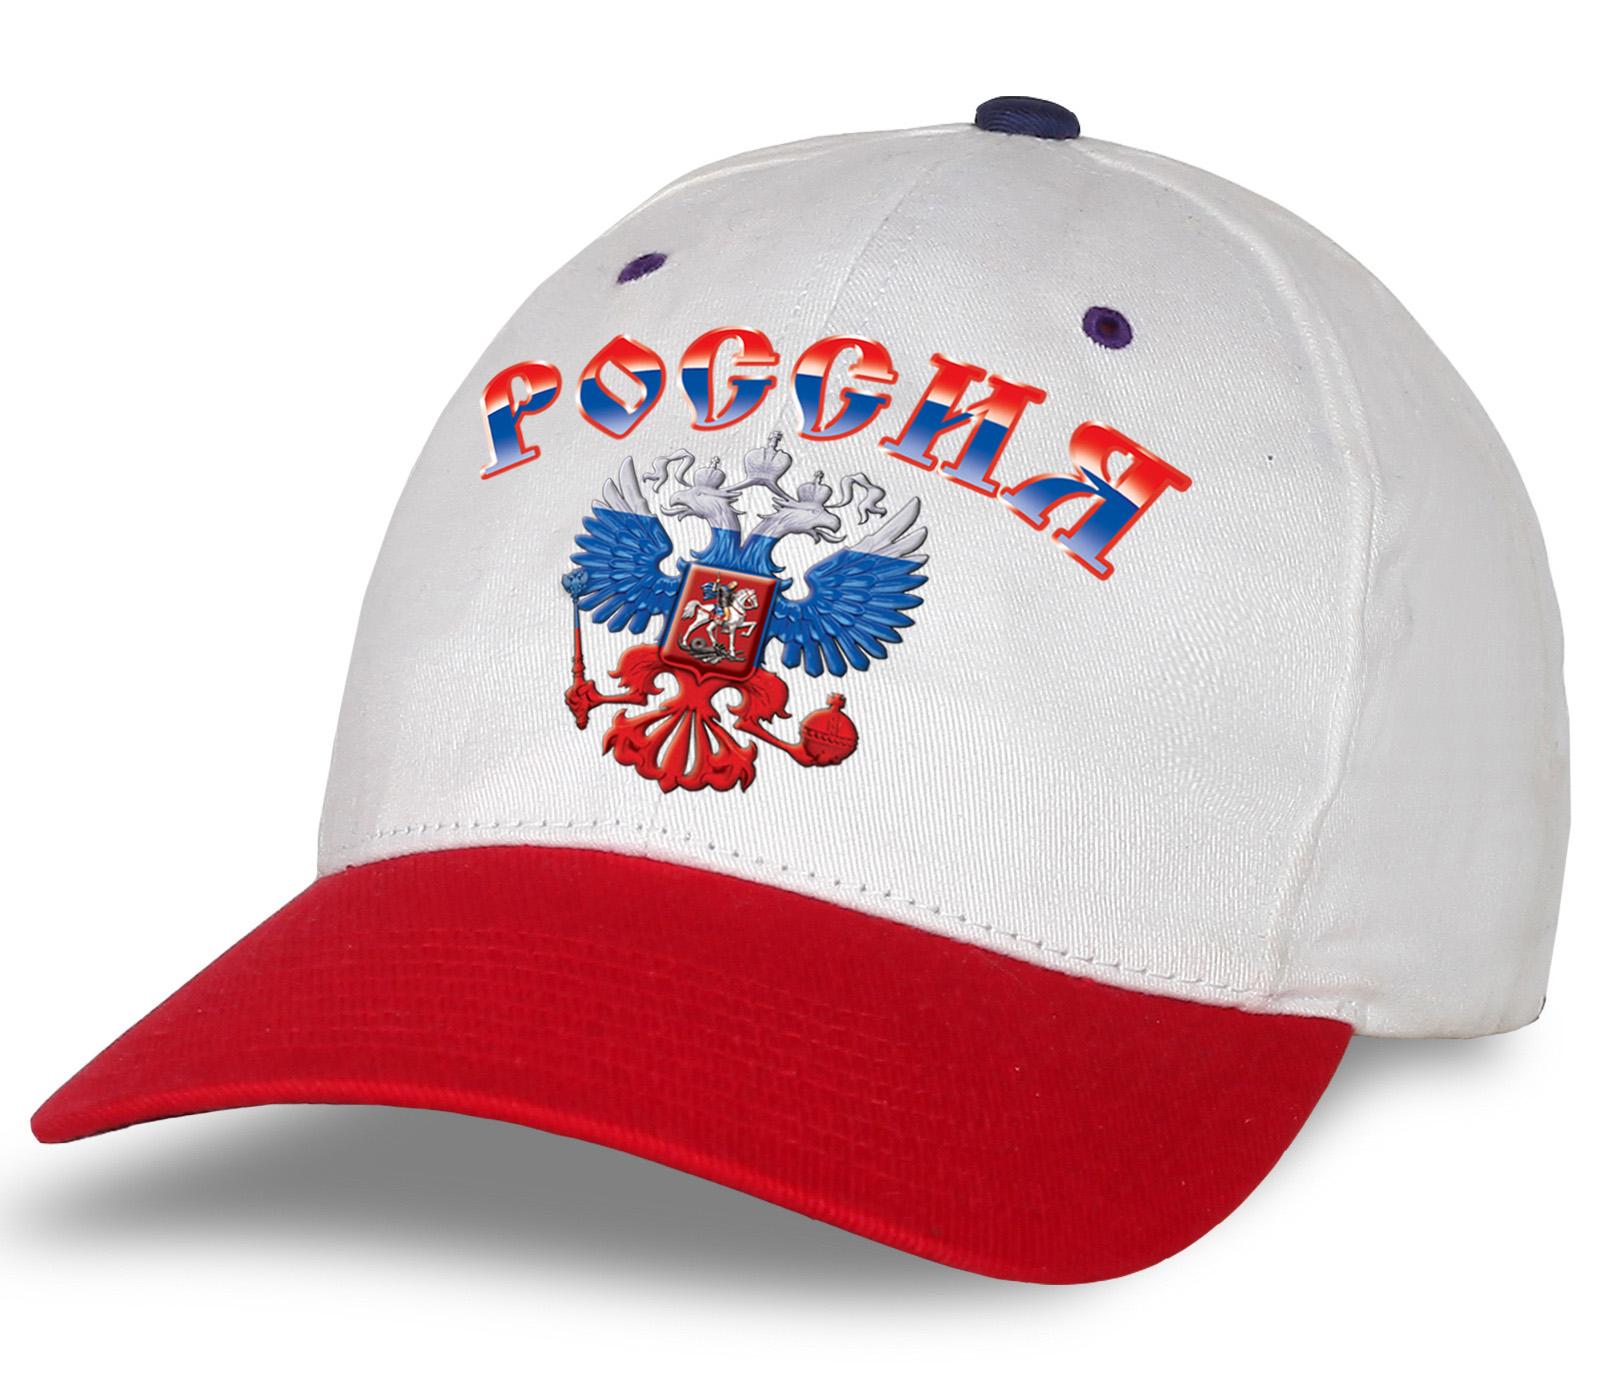 Мужская кепка с принтом российской символики  (Бело-красная)